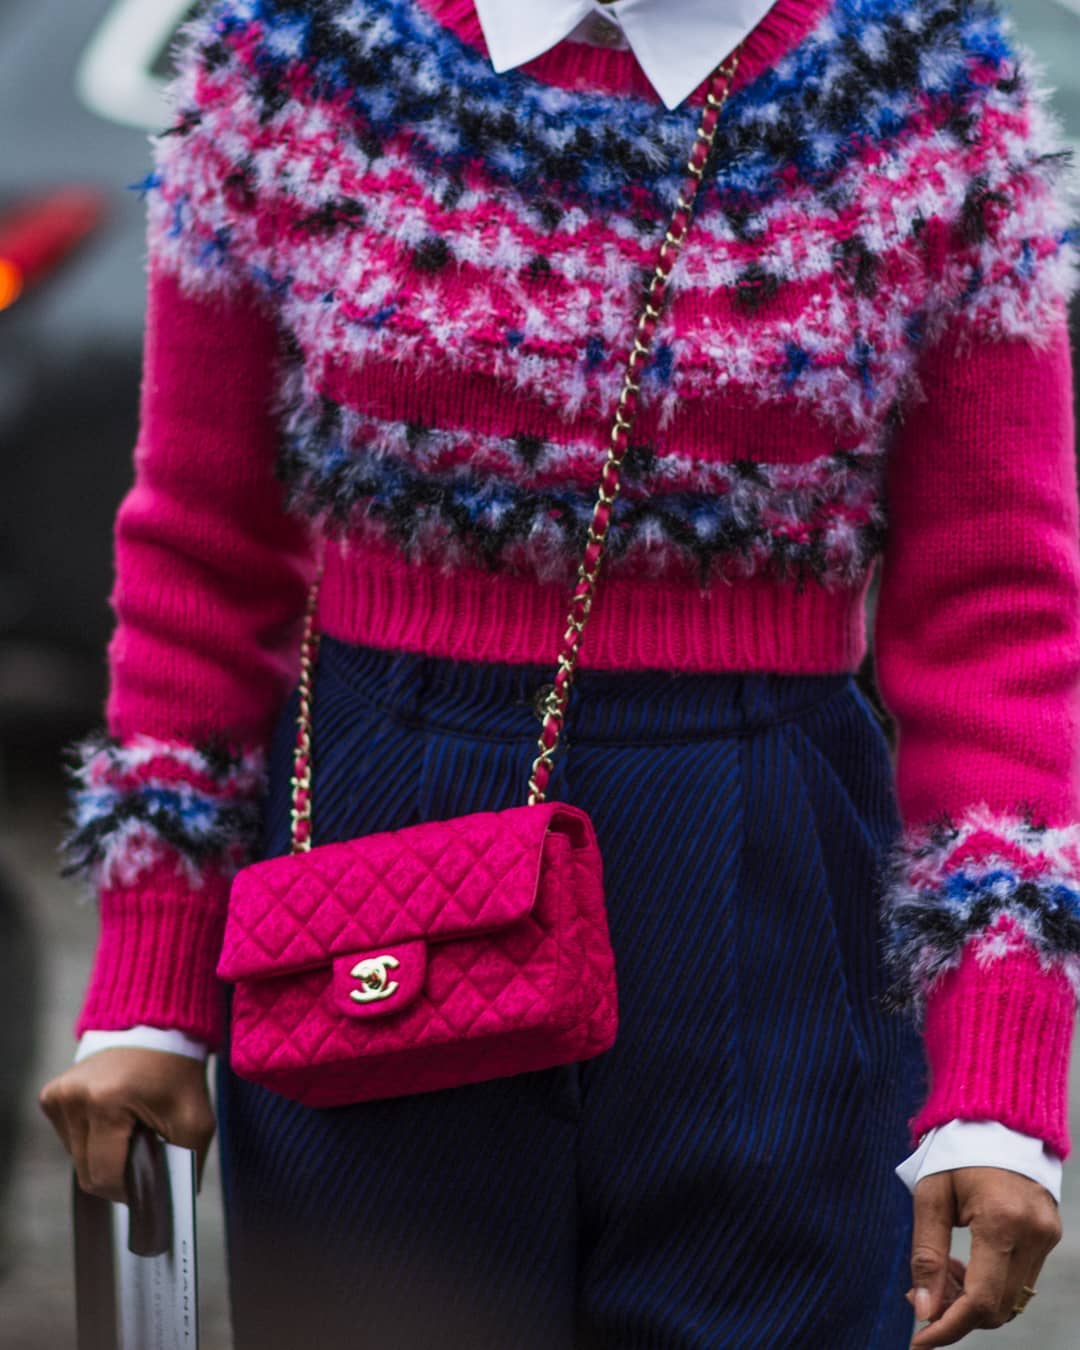 Jersey y bolso de Chanel en rosa fucsia